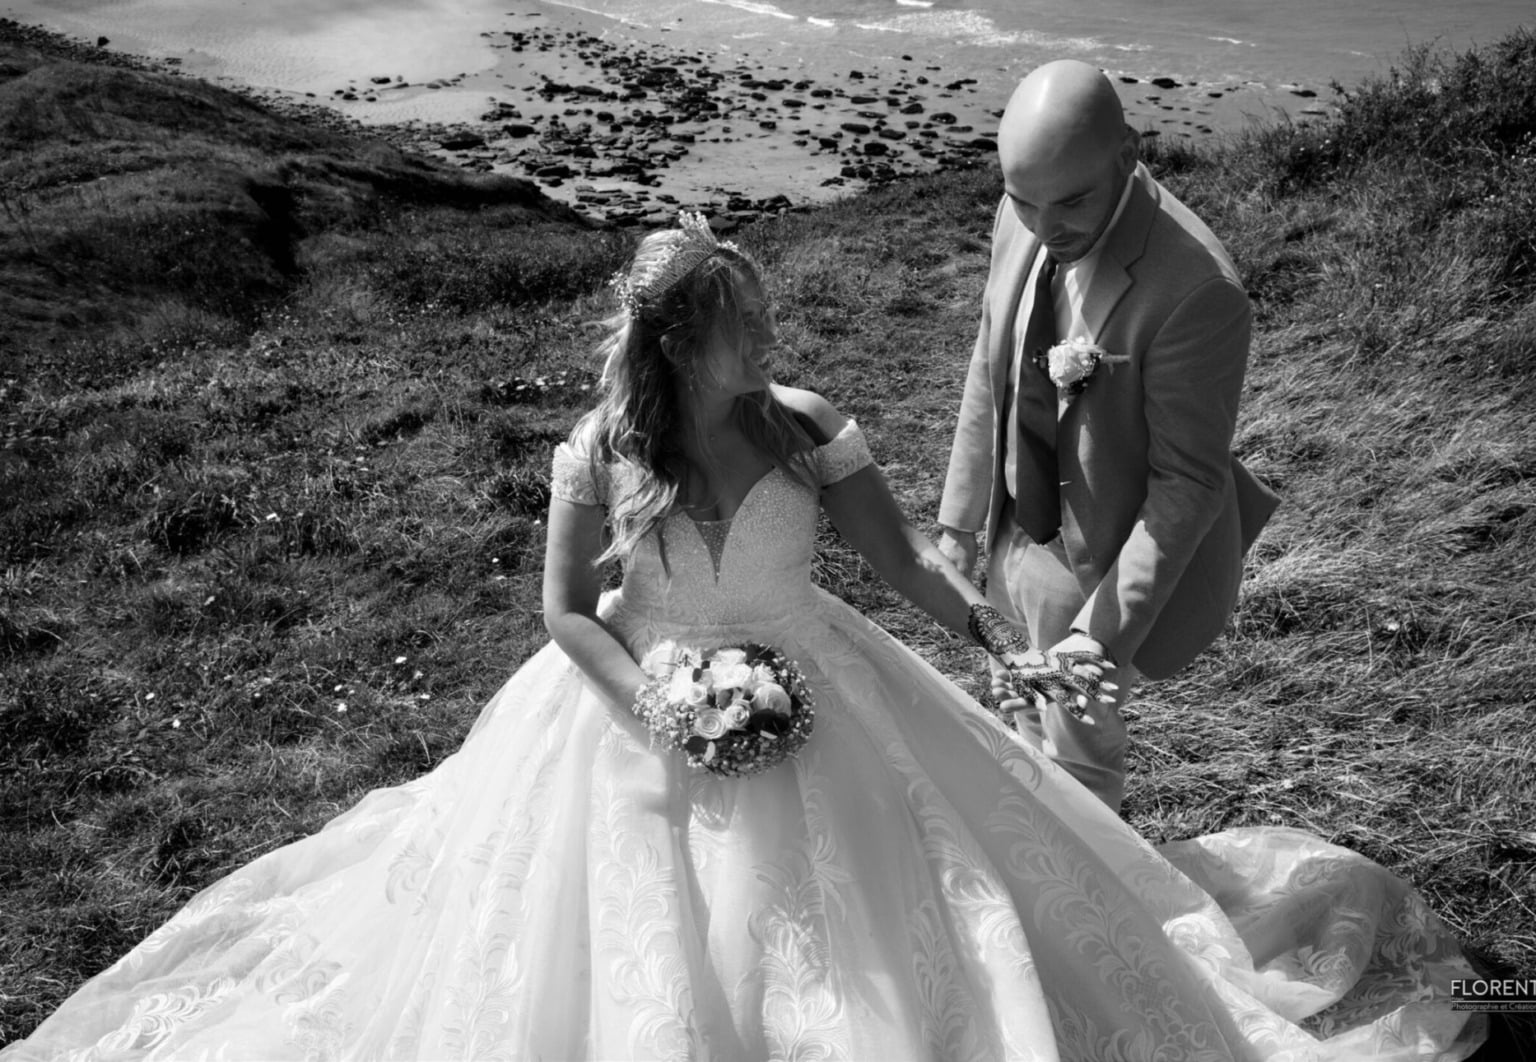 intime et douce photo de mariage en noir et blanc florent studio photographe boulogne sur mer lille paris calais le touquet